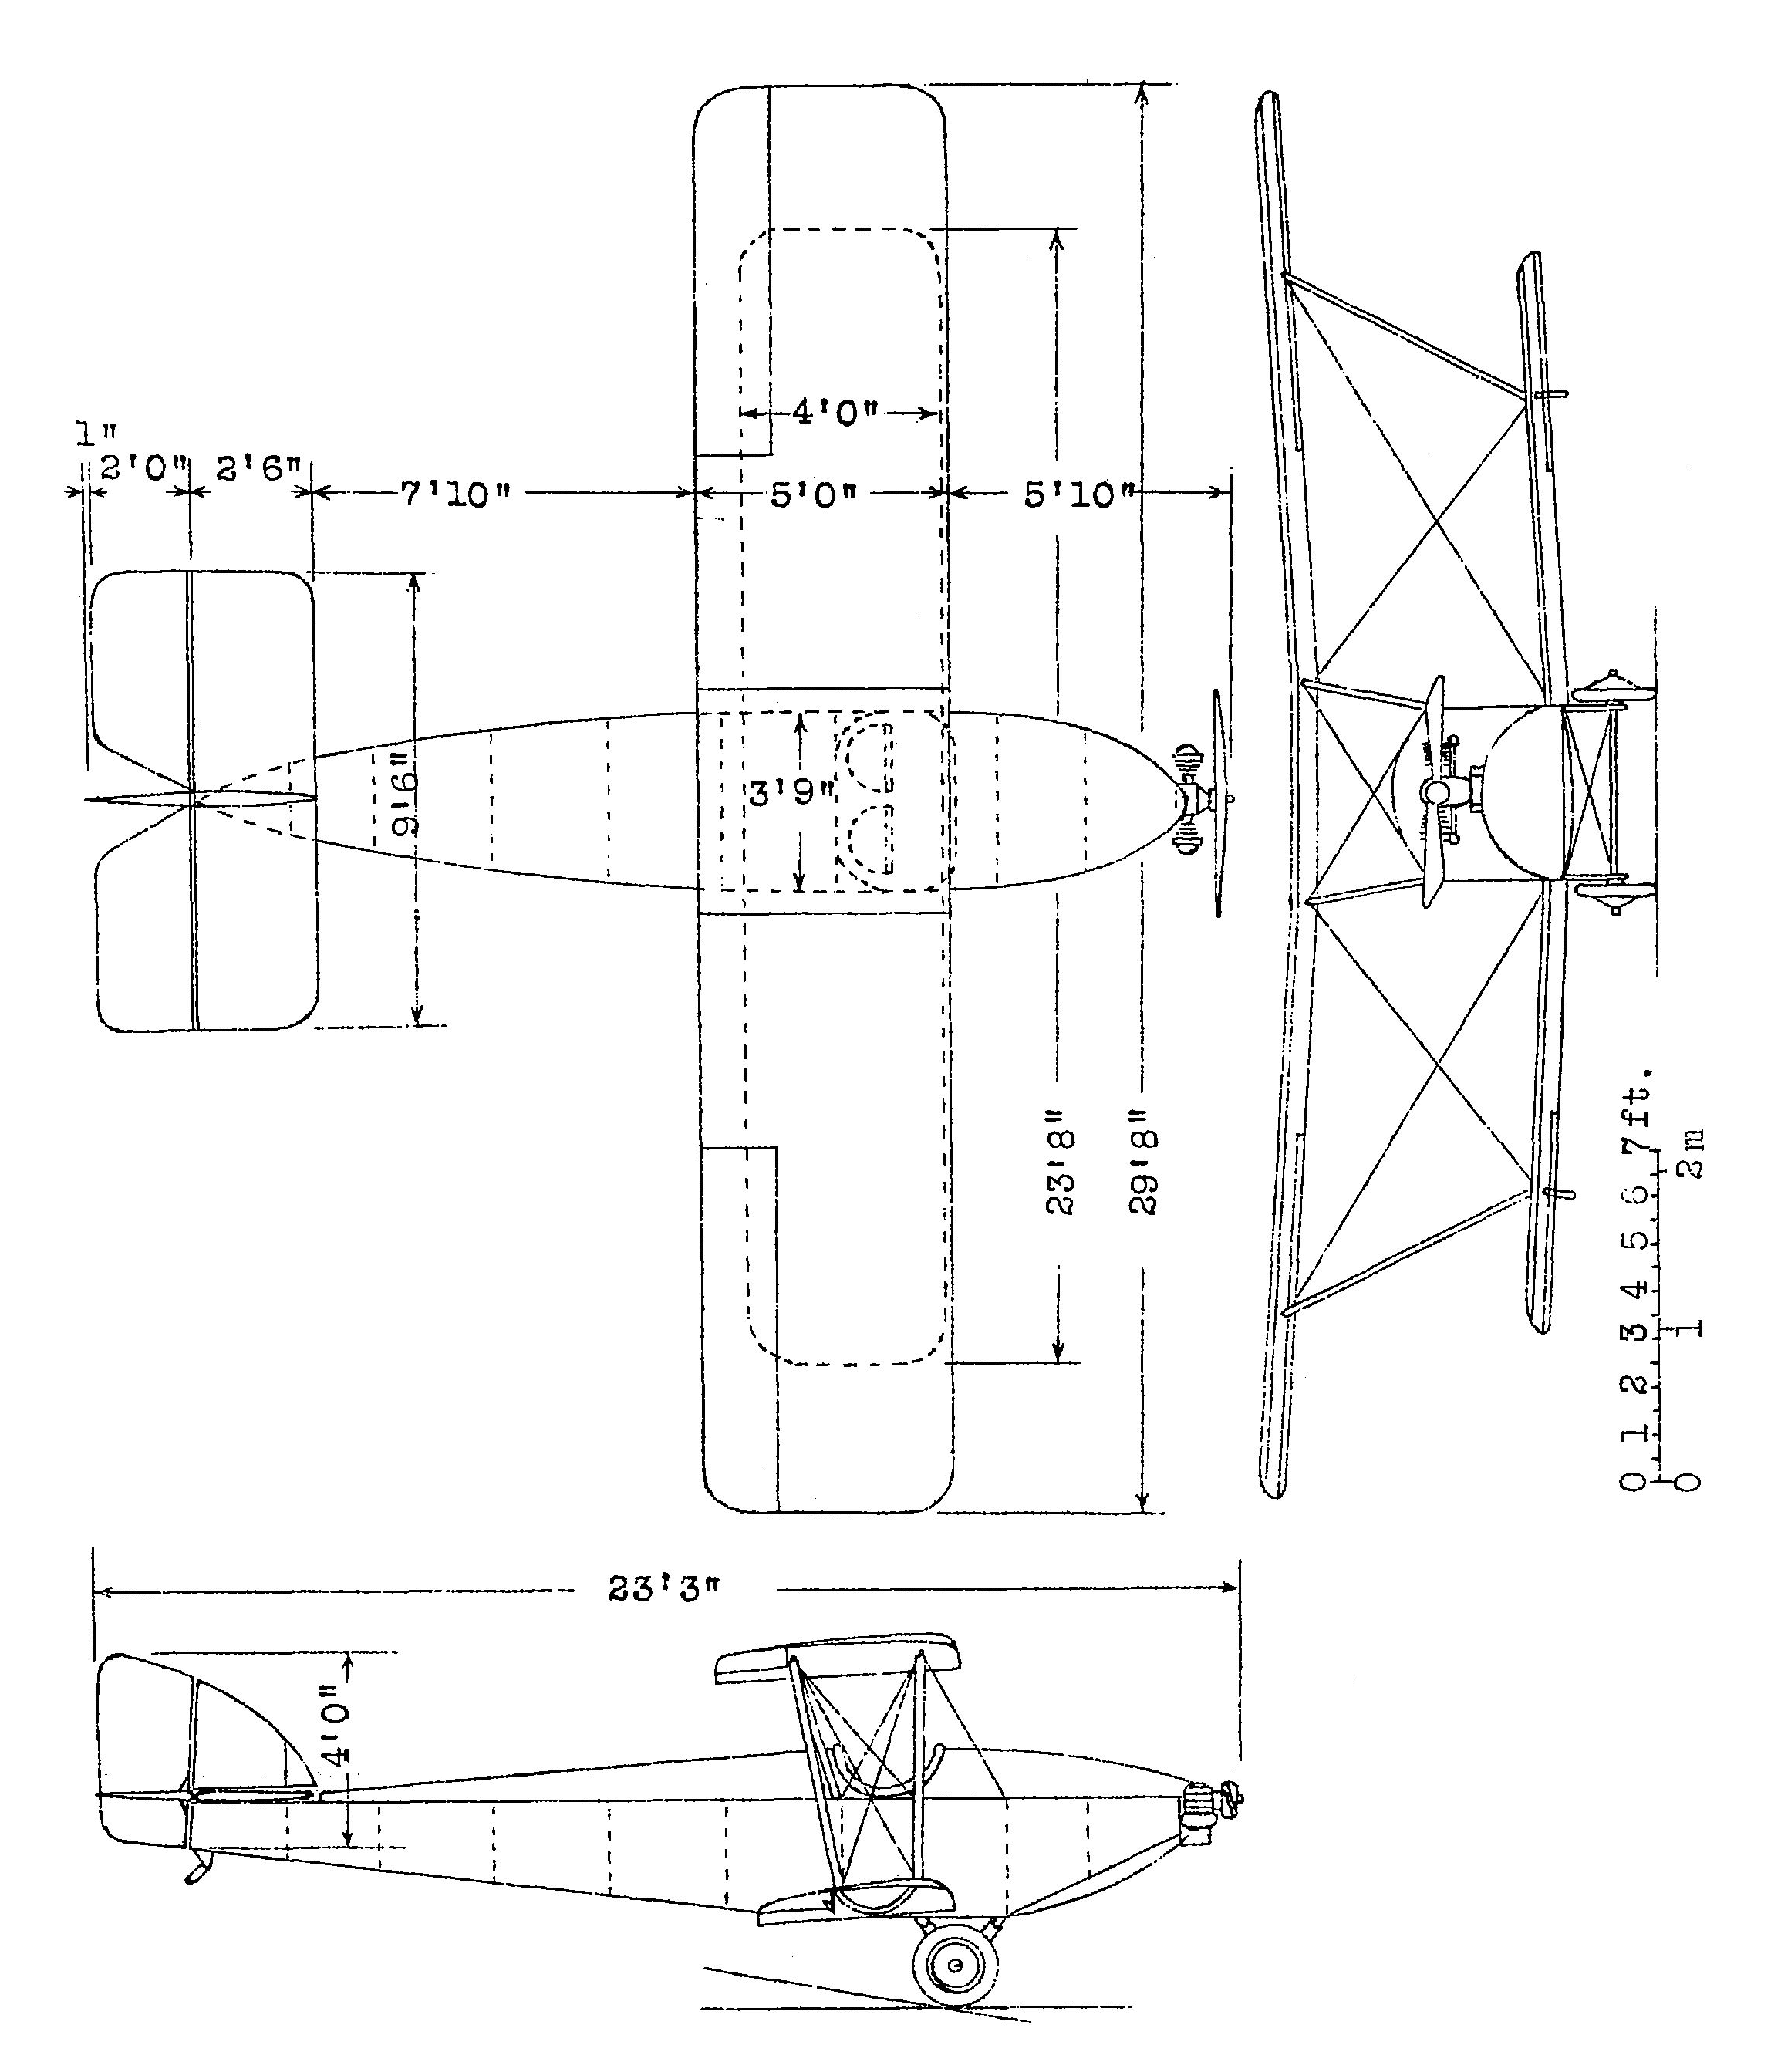 Cranwell CLA.2 blueprint